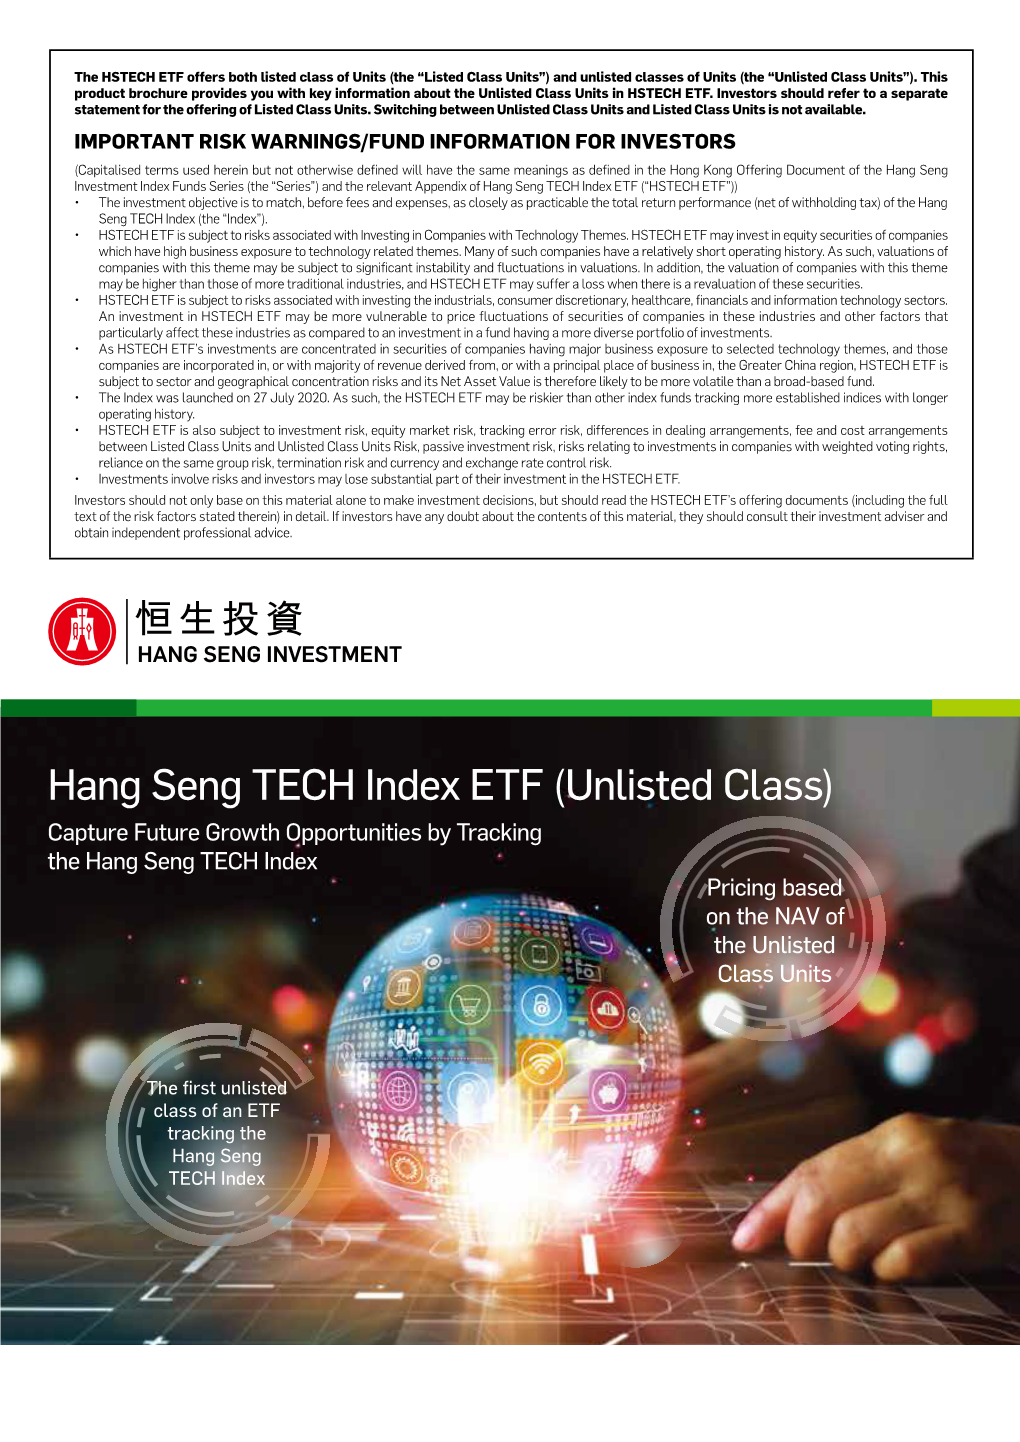 Hang Seng TECH Index ETF (Unlisted Class)